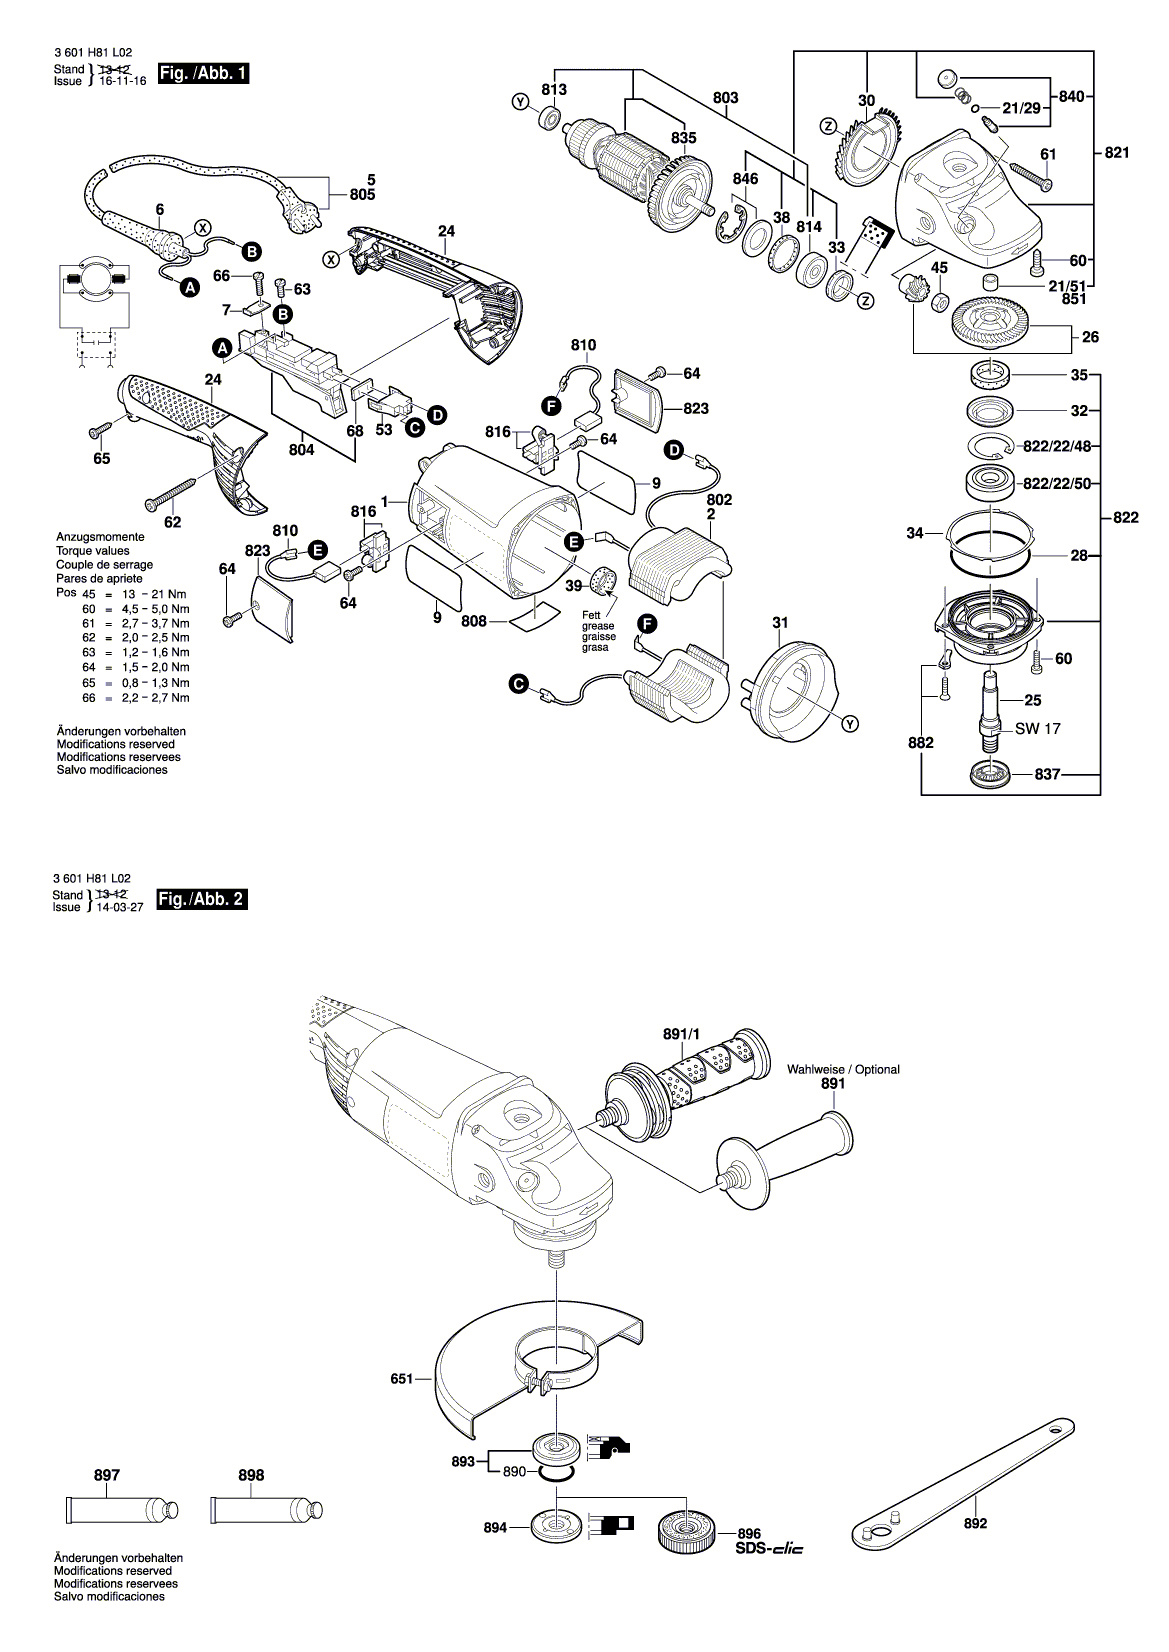 Схема на Угловая шлифмашина Bosch GWS 2030 H (3 601 H82 L64)